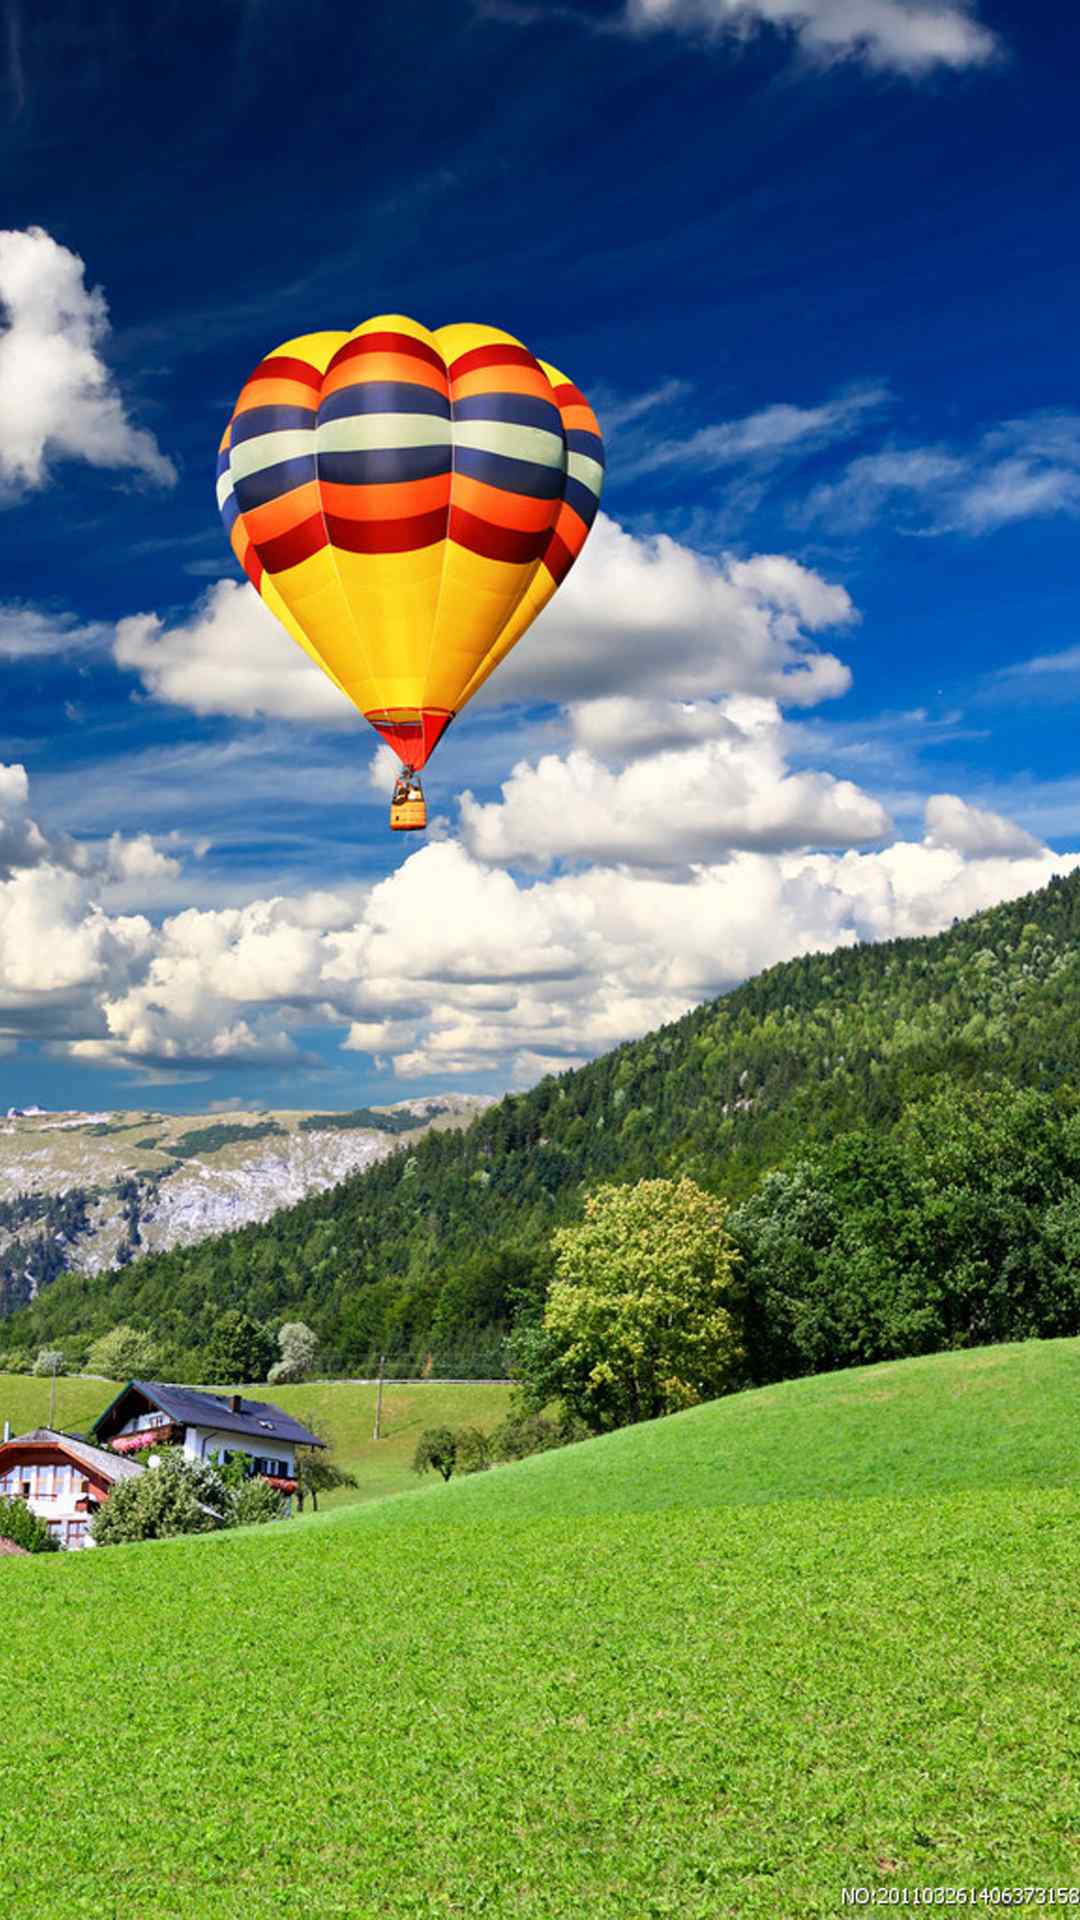 热气球风景摄影高清手机壁纸 - tt98图片网